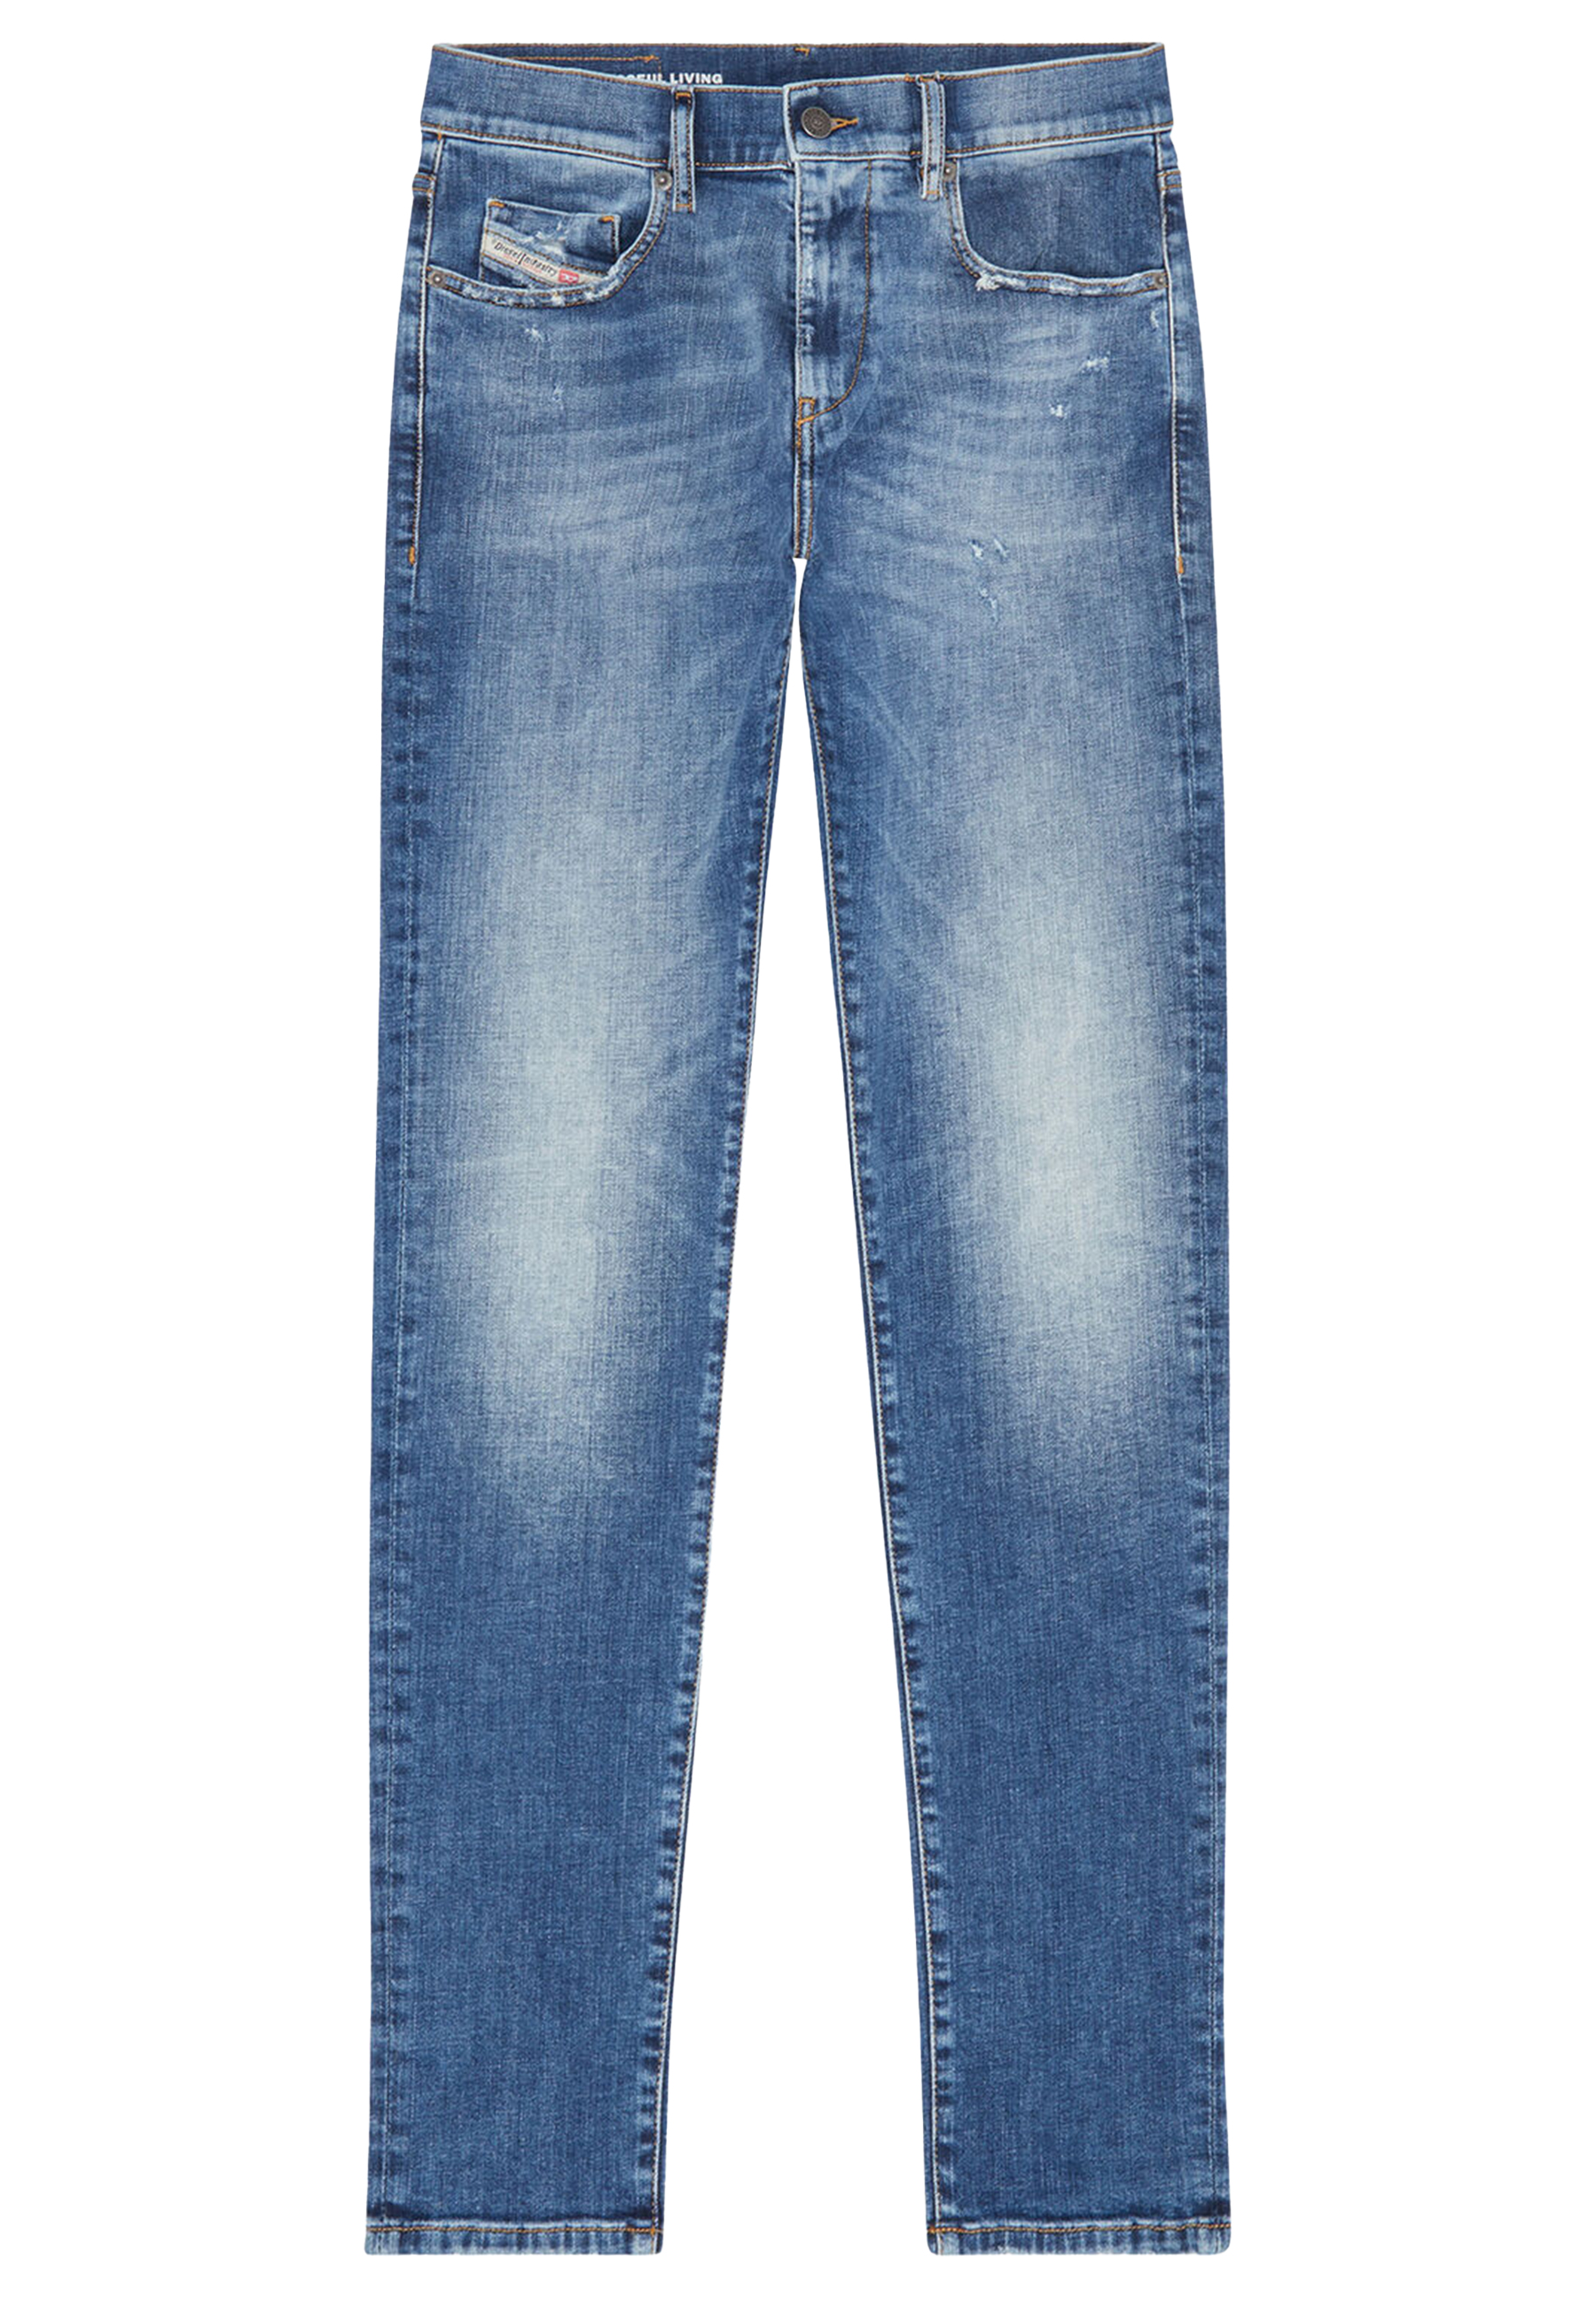 Diesel Jeans Jeans Katoen maat 31/34 D-strukt jeans jeans